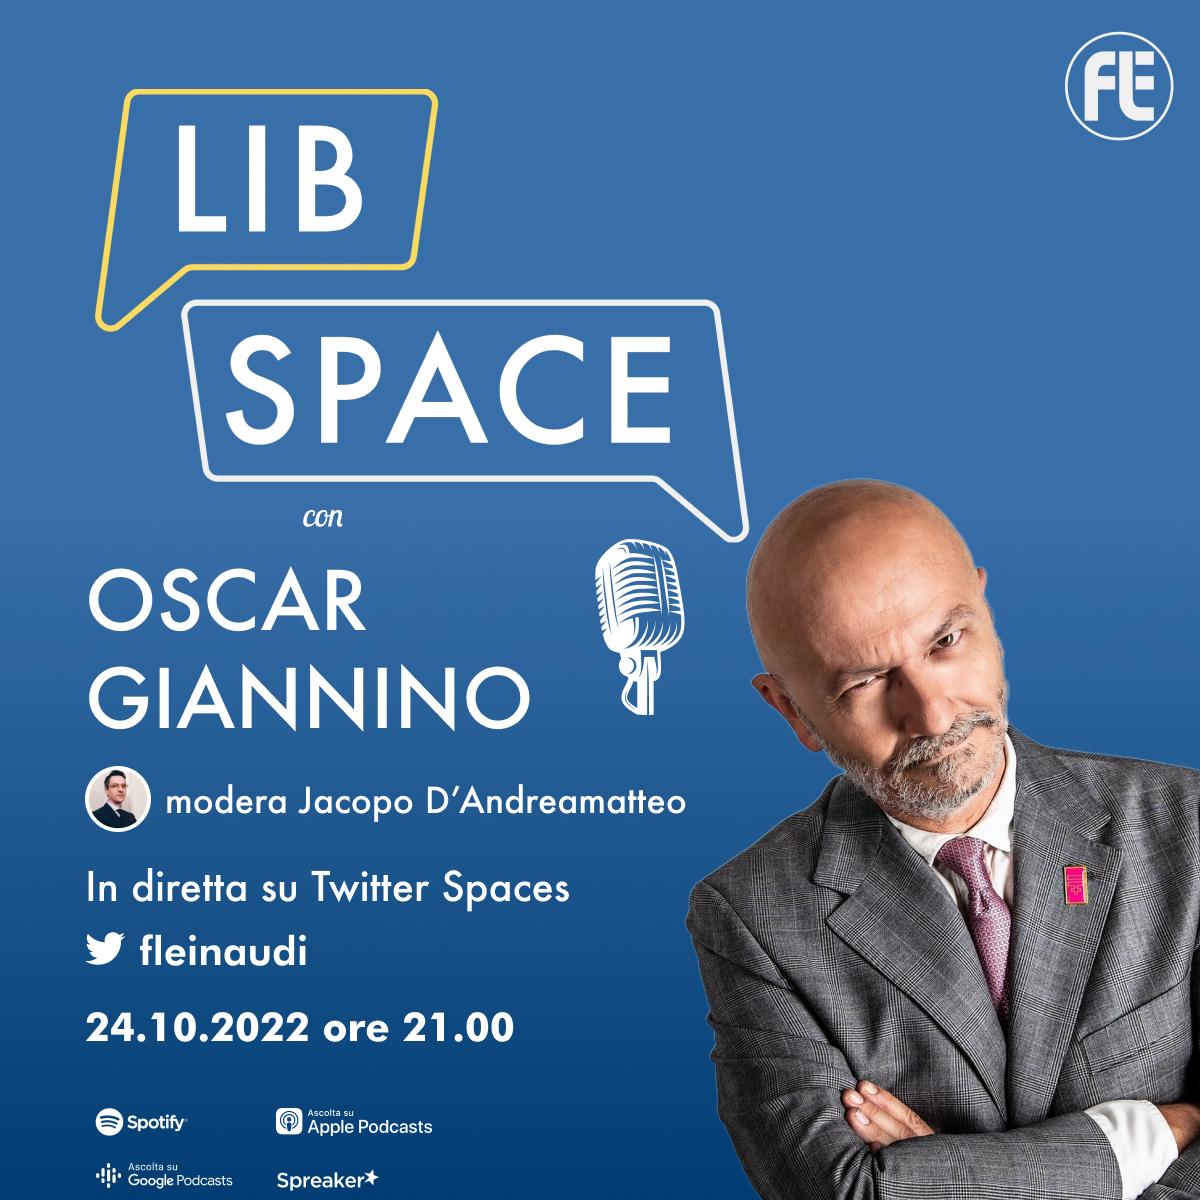 LibSpace con Oscar Giannino